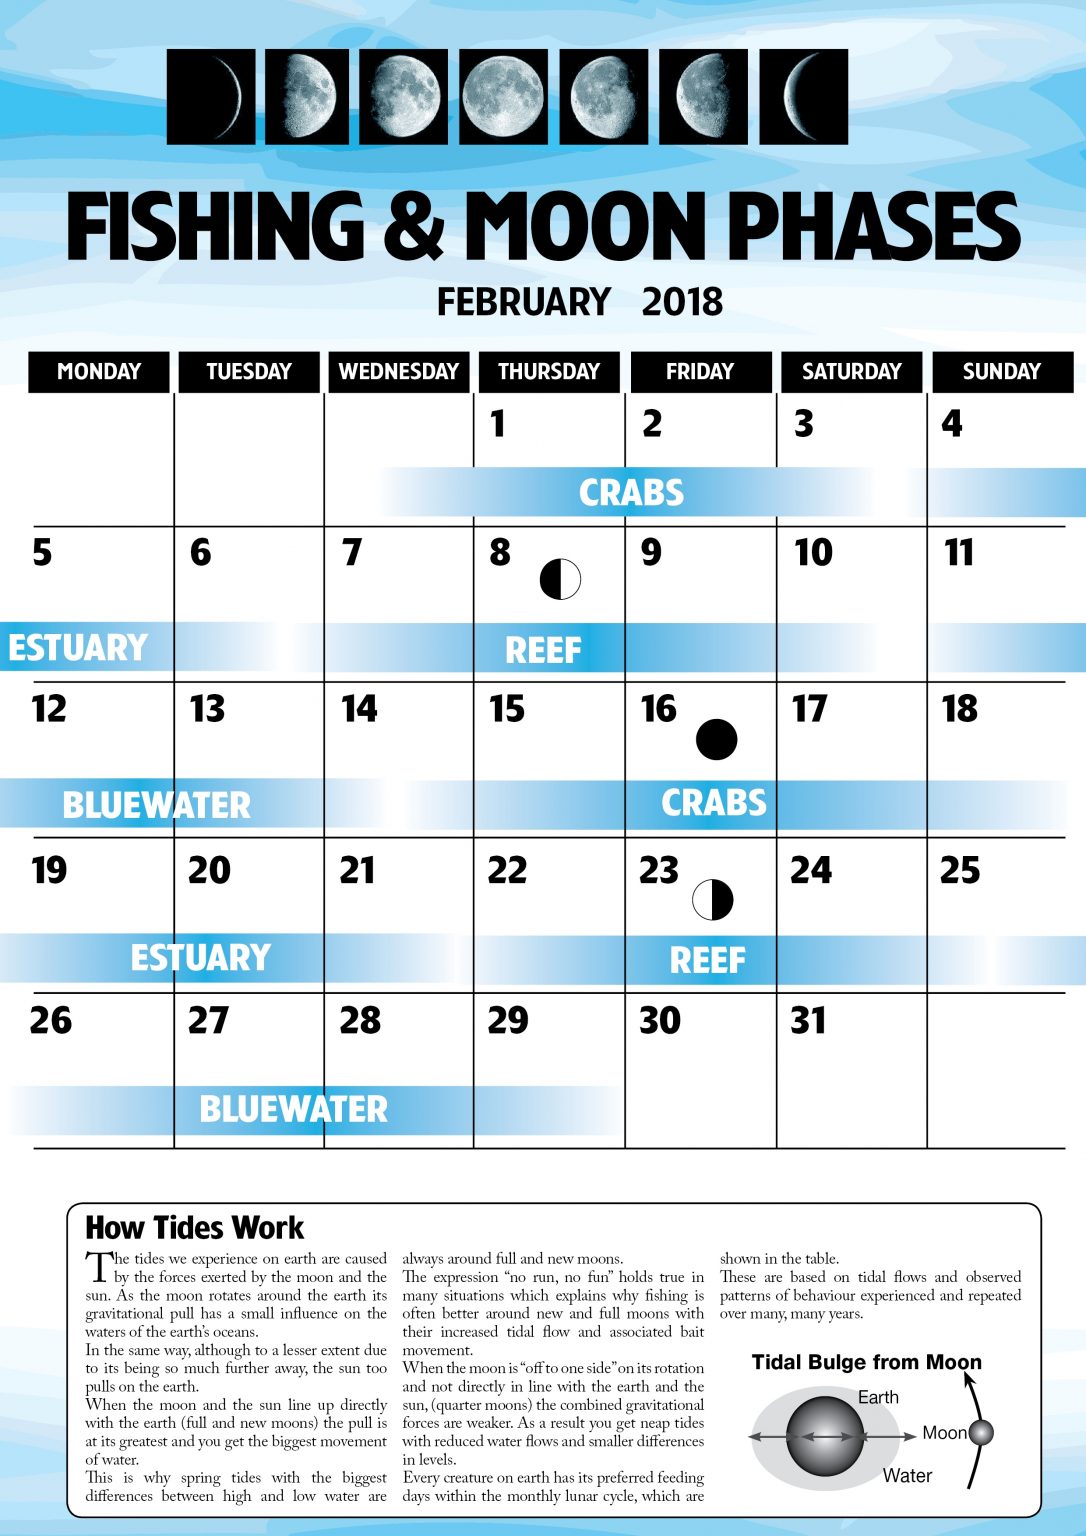 February 2018 Fishing & Moon Phases Fish & Boat Magazine